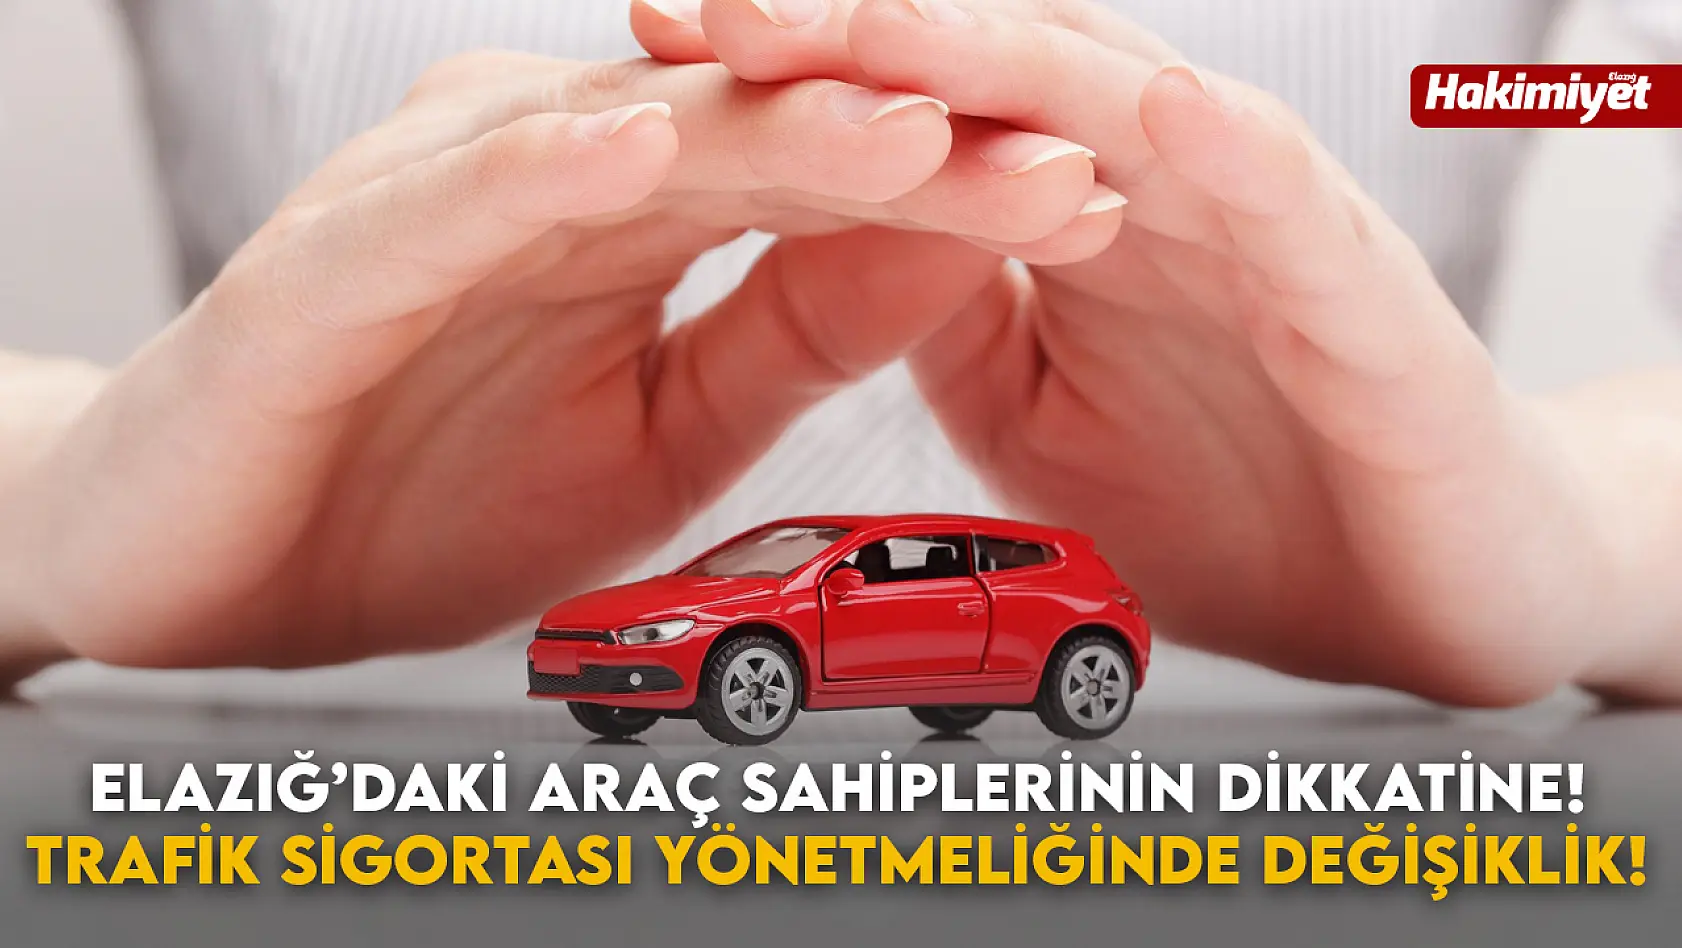 Elazığ'daki Araç Sahiplerinin Dikkatine! Trafik Sigortası Yönetmeliğinde Değişiklik!